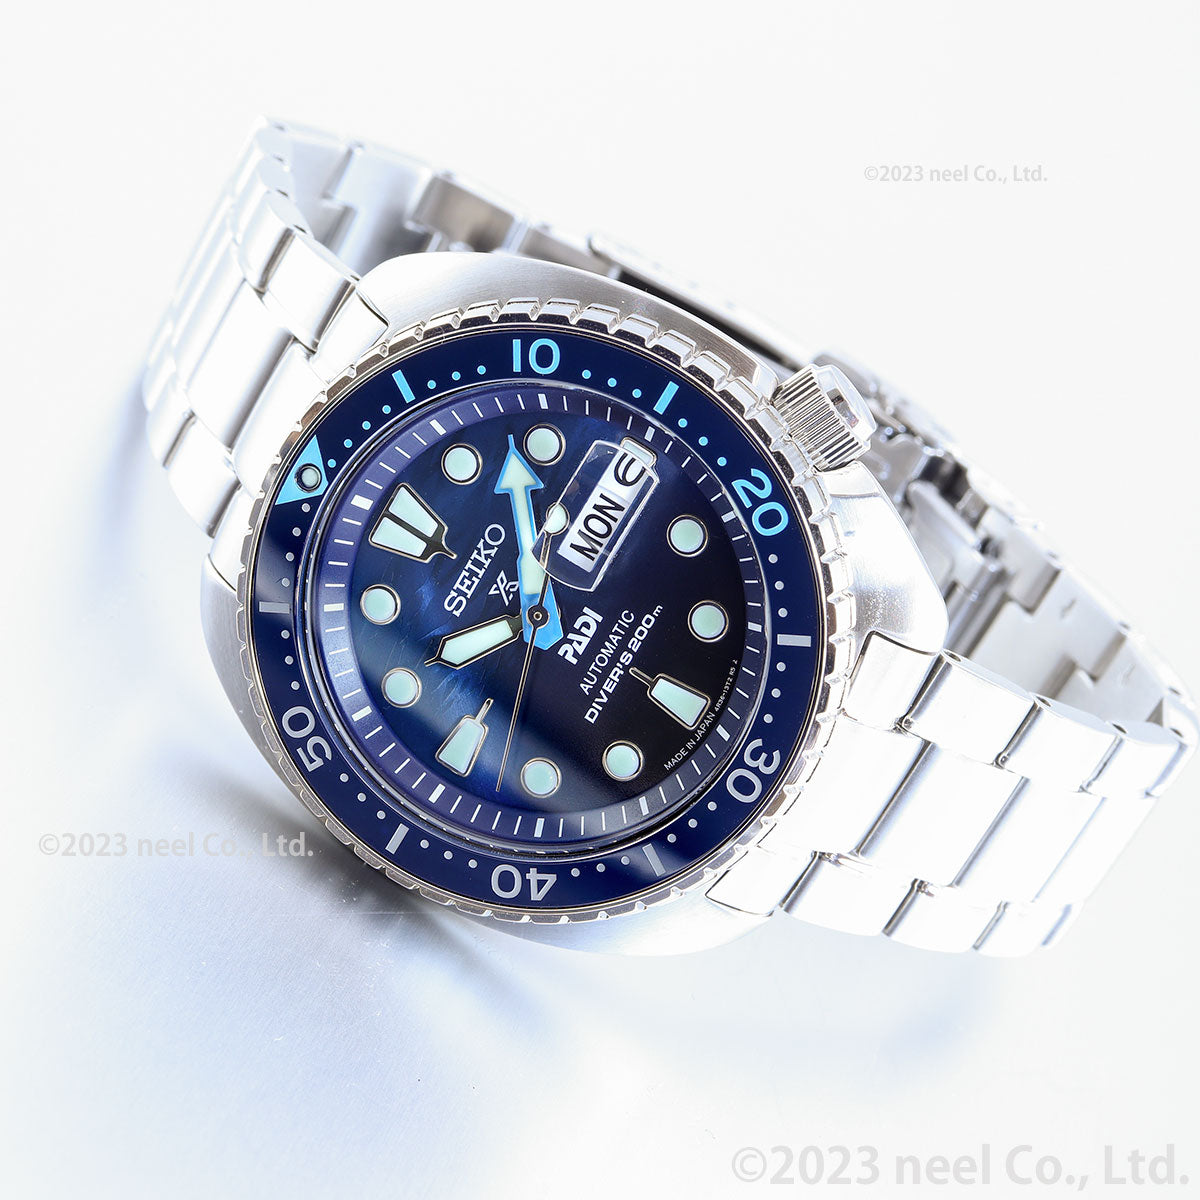 セイコー プロスペックス SEIKO PROSPEX ダイバースキューバ メカニカル 自動巻き PADIスペシャルモデル 腕時計 メンズ SBDY125